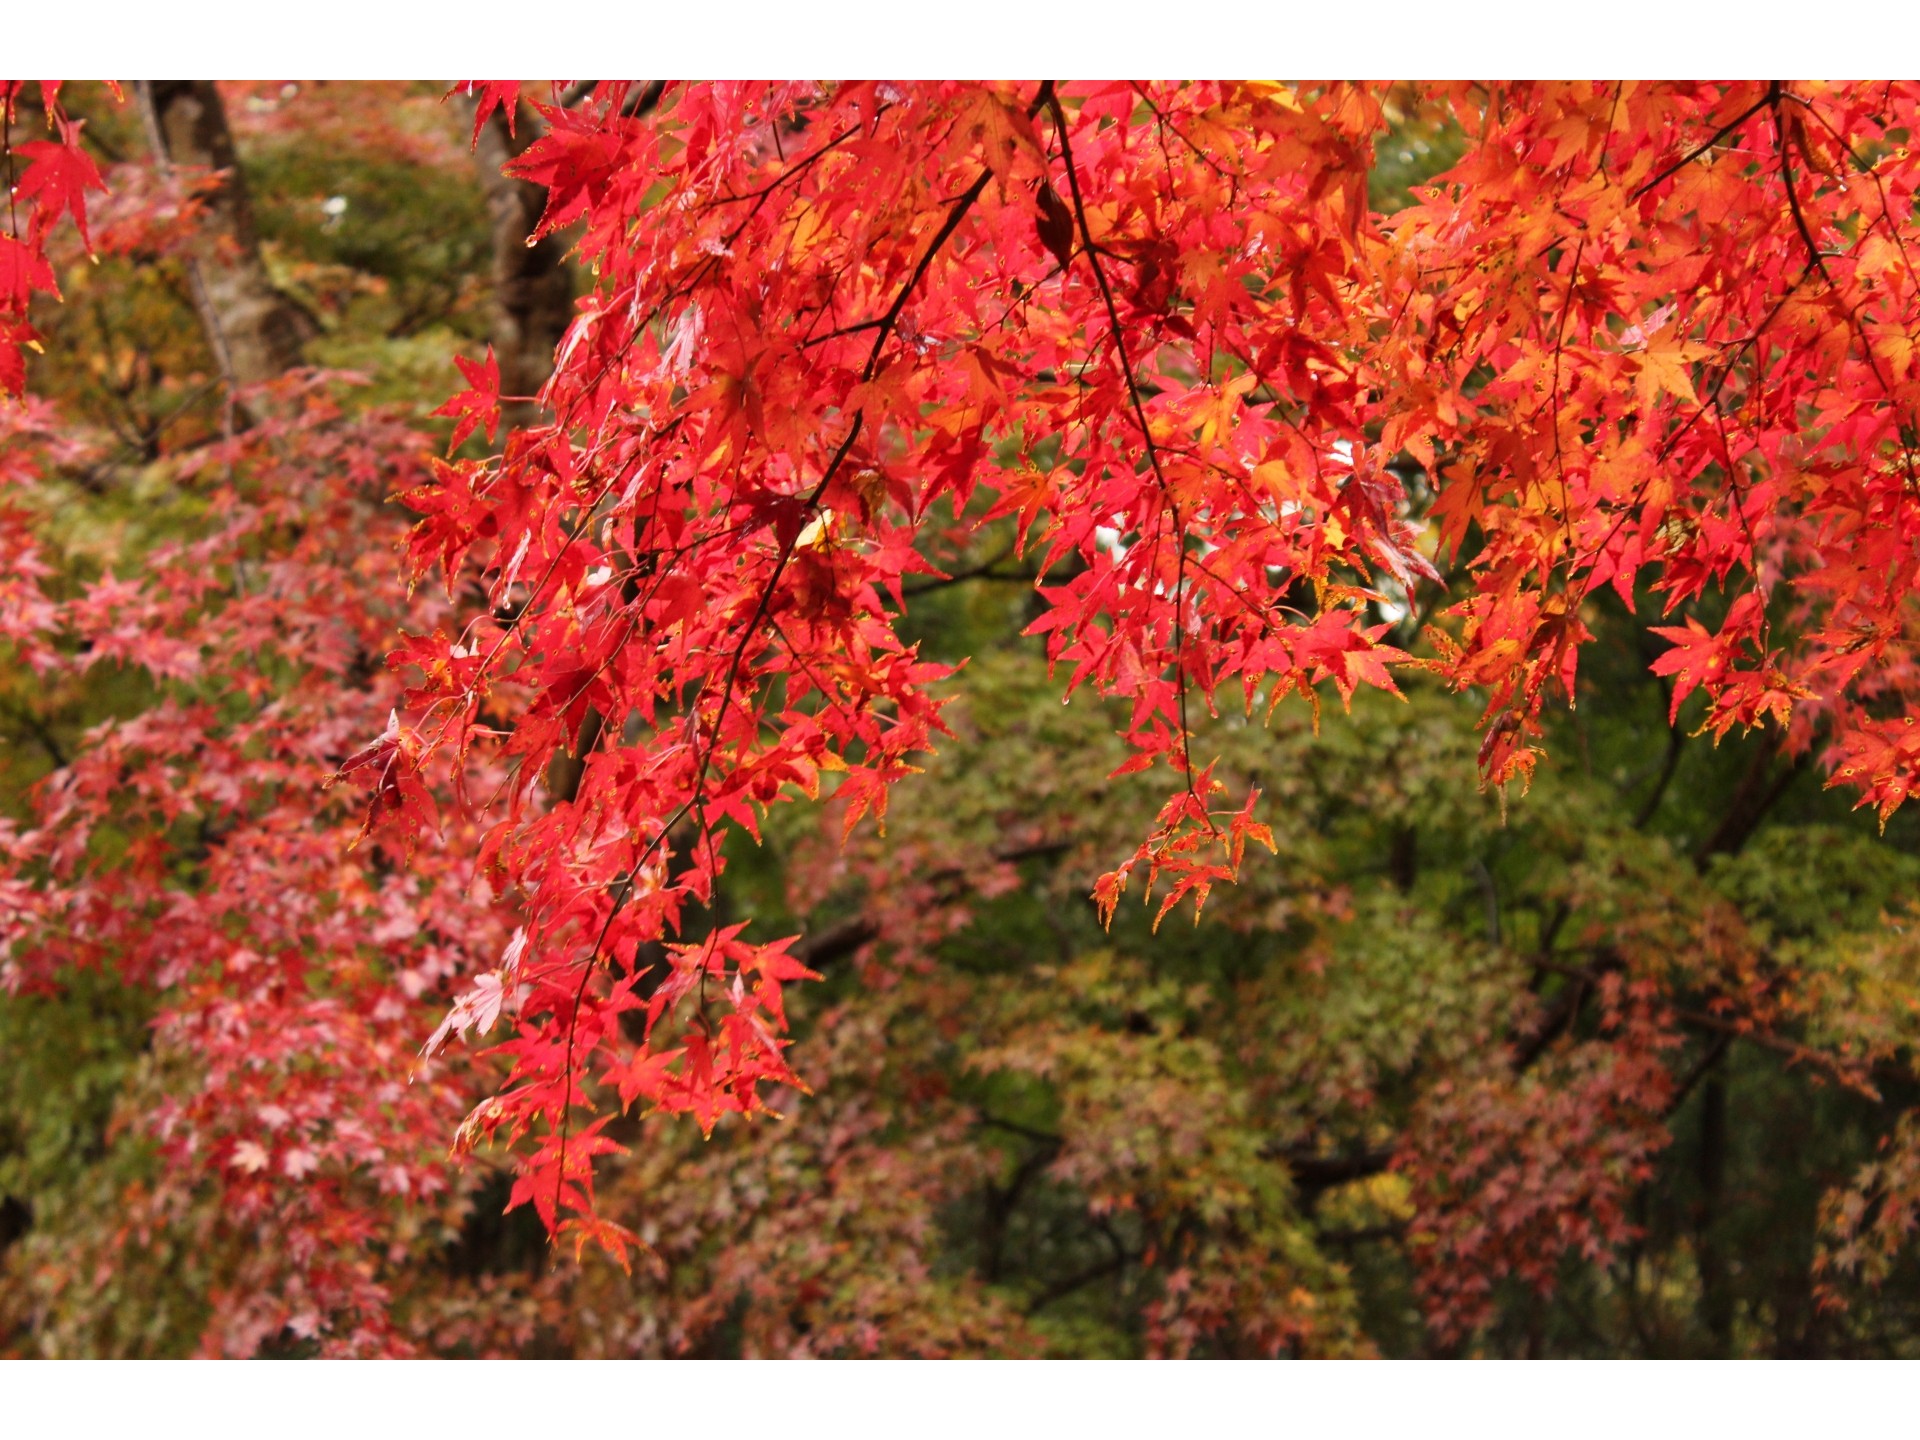 【小湊鉄道線】紅葉が色鮮やかな秋の養老渓谷